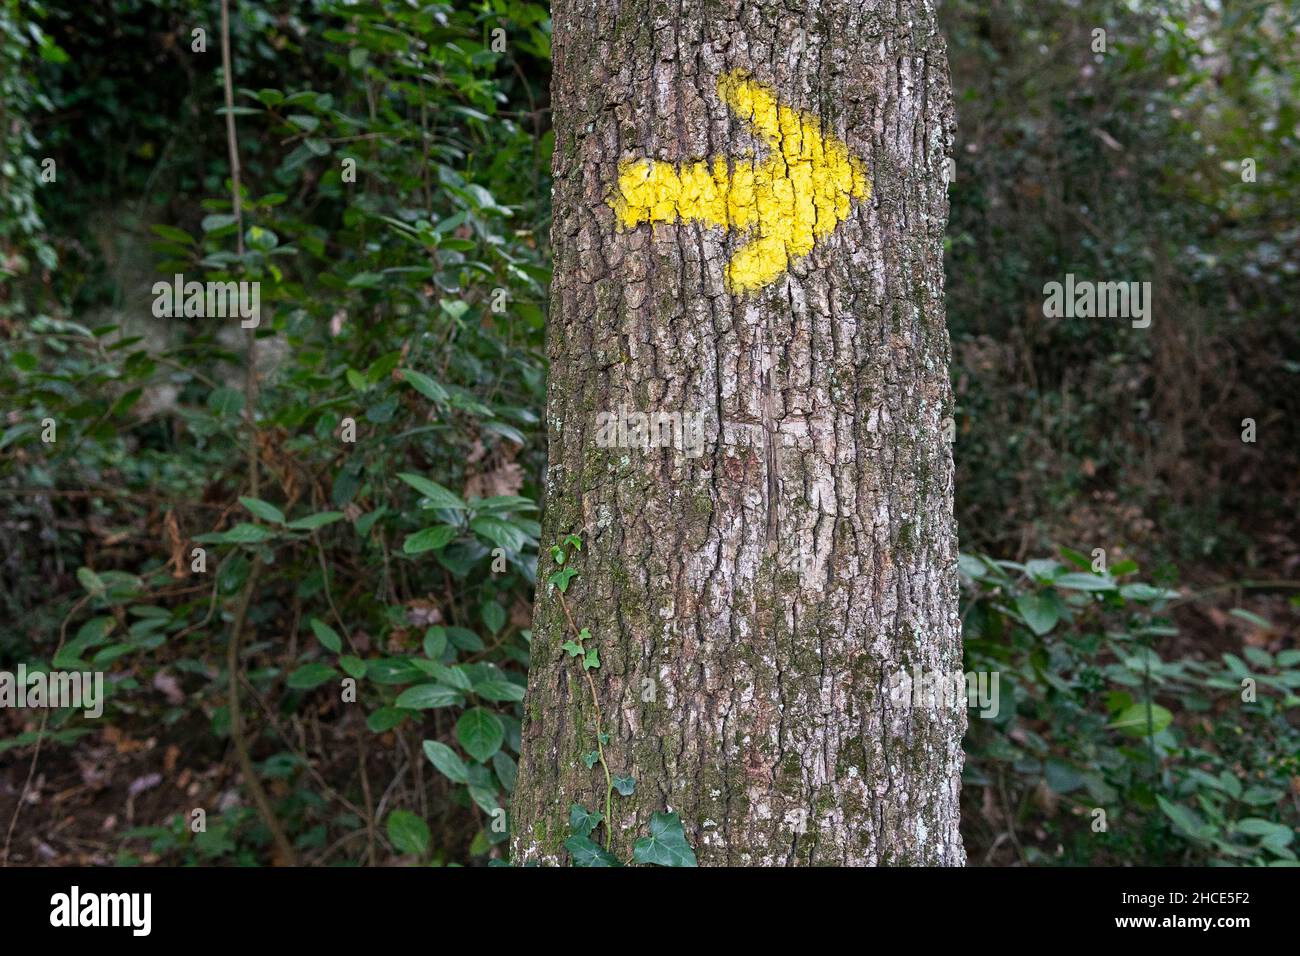 Puntero de flecha pintado en amarillo que muestra la dirección en el grueso tronco de árbol que crece en el bosque con plantas verdes en el día de verano en la naturaleza Foto de stock